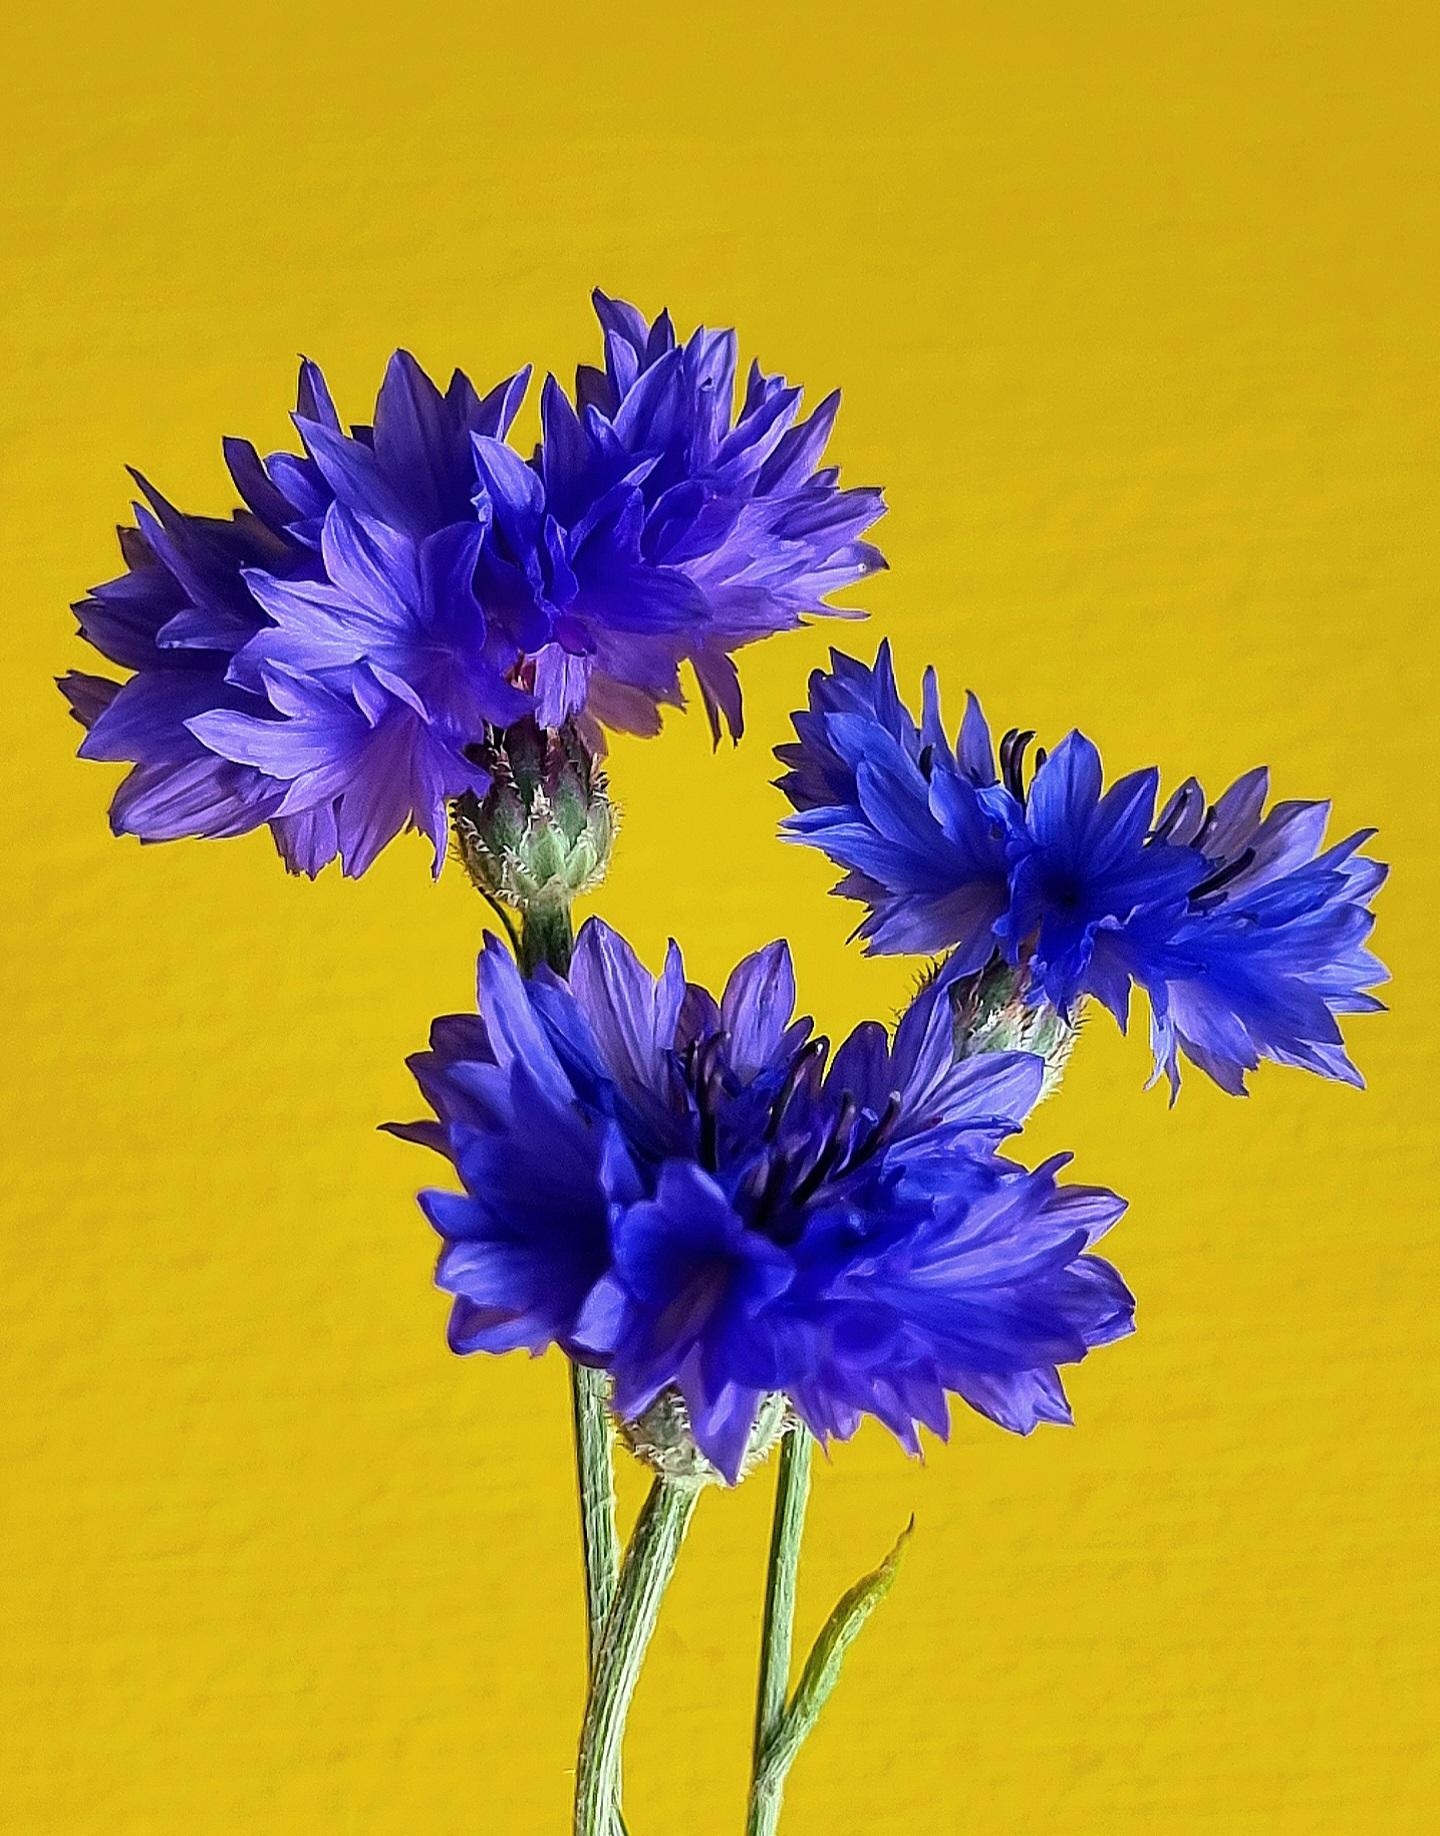 Große #Liebe für genau dieses #Blau  #💙 #freshflowerfriday #Kornblumen im #Sommer #Natur #Blumenliebe 